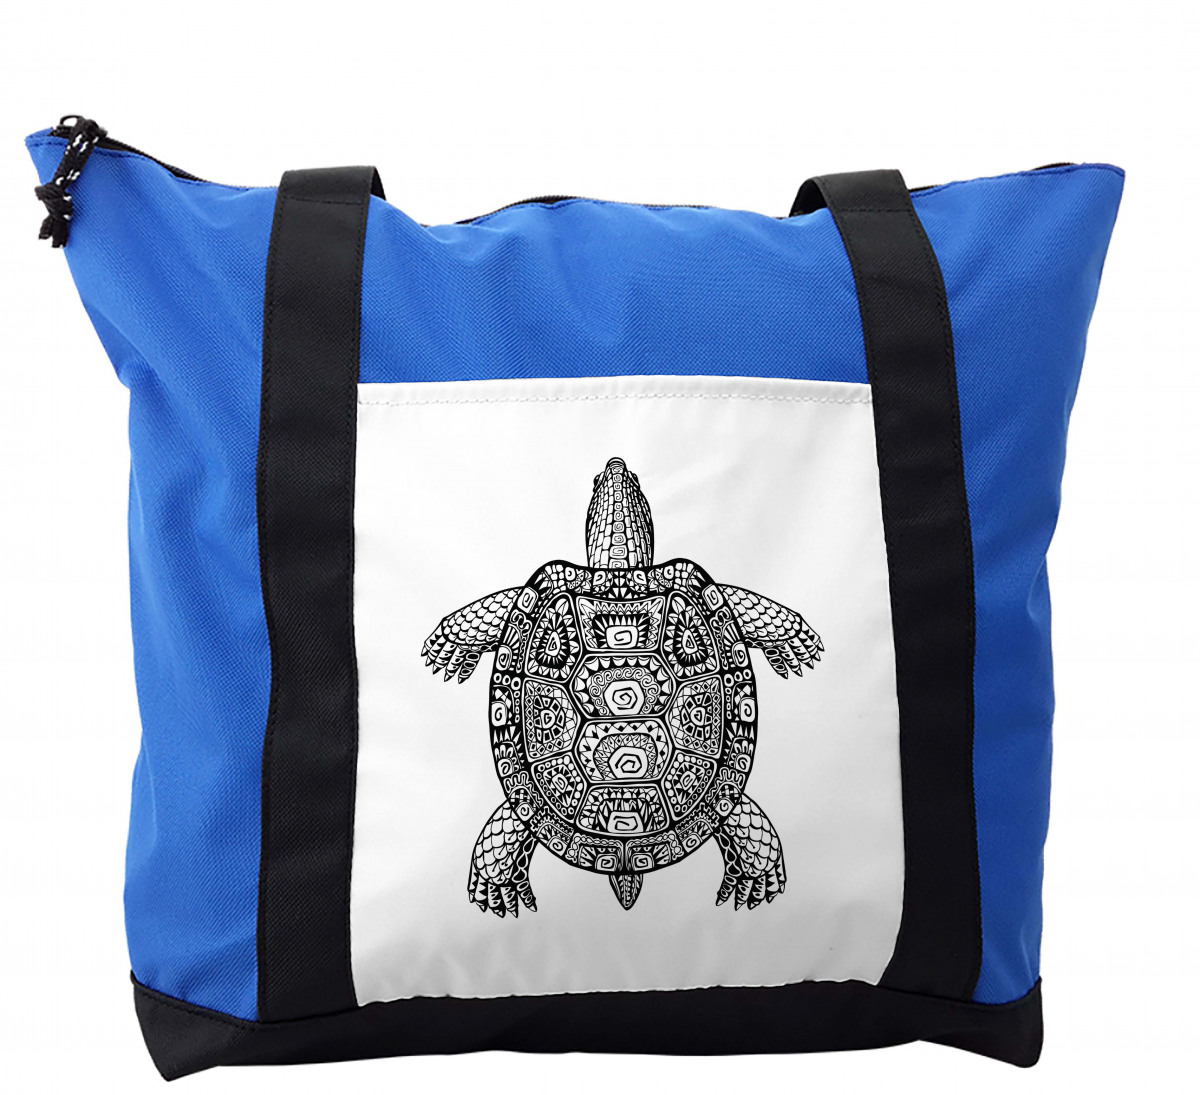 Best Tortoise in plastic bag Illustration download in PNG & Vector format